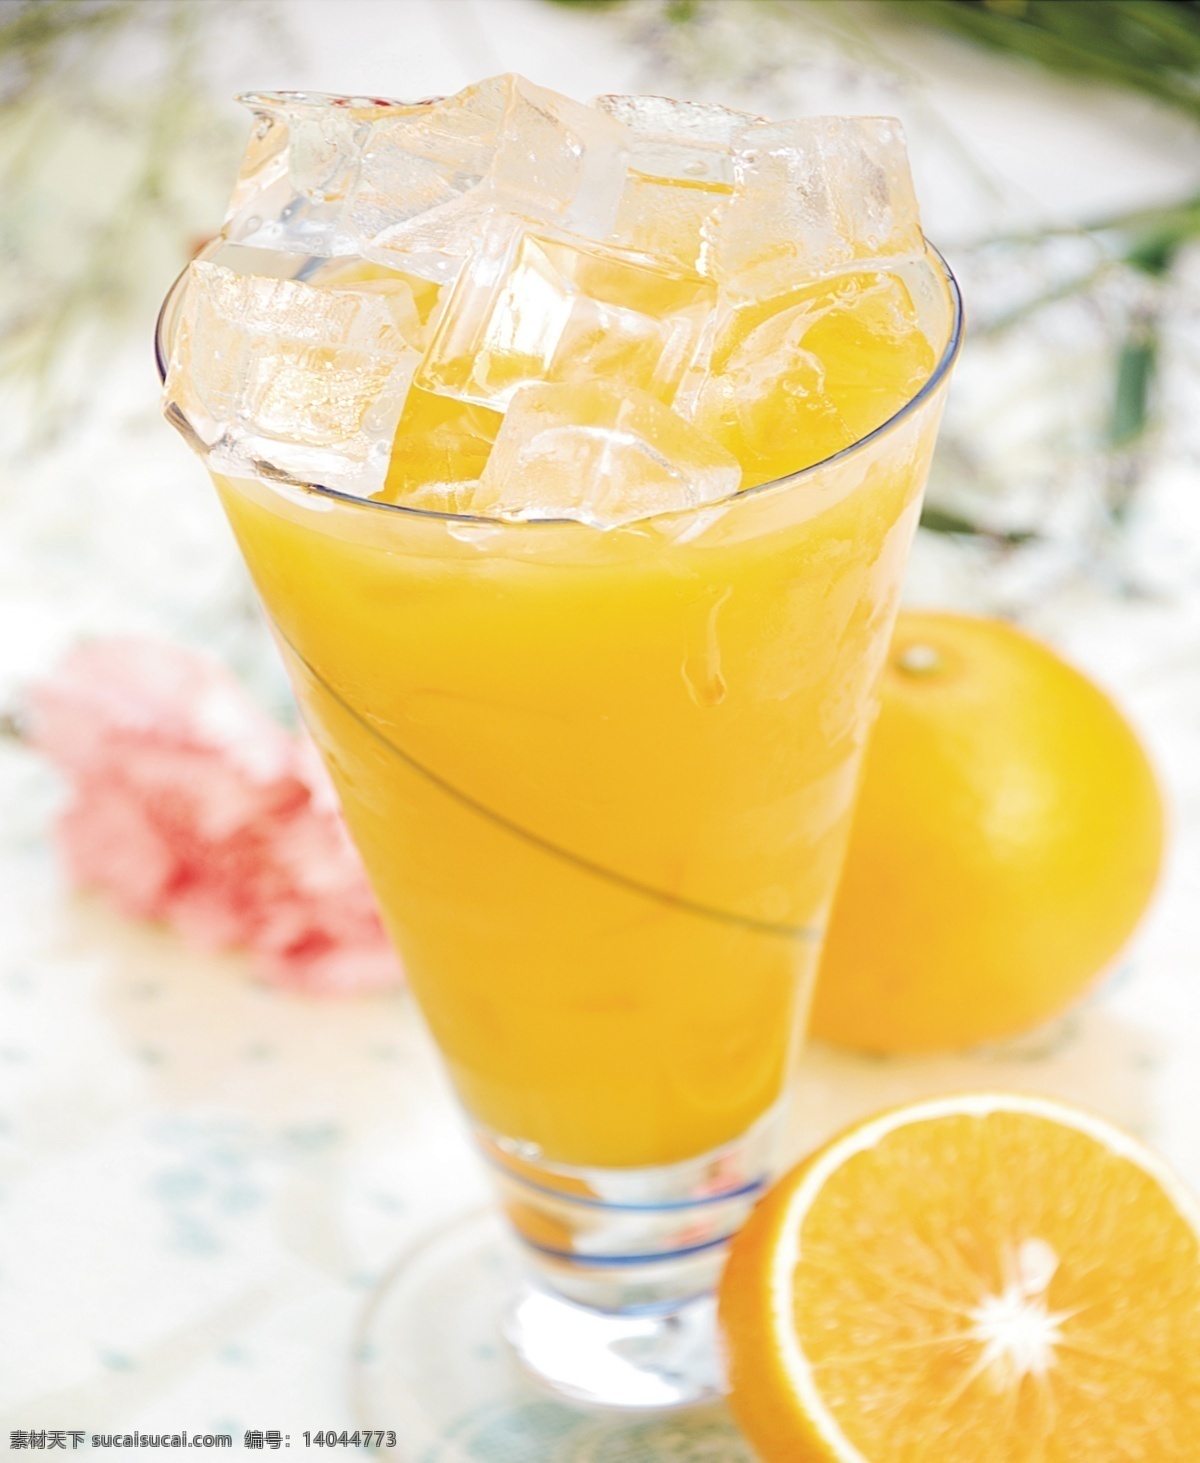 鲜橙汁 冰块 餐饮美食 生活百科 鲜橙 饮料杯 设计素材 模板下载 psd源文件 餐饮素材